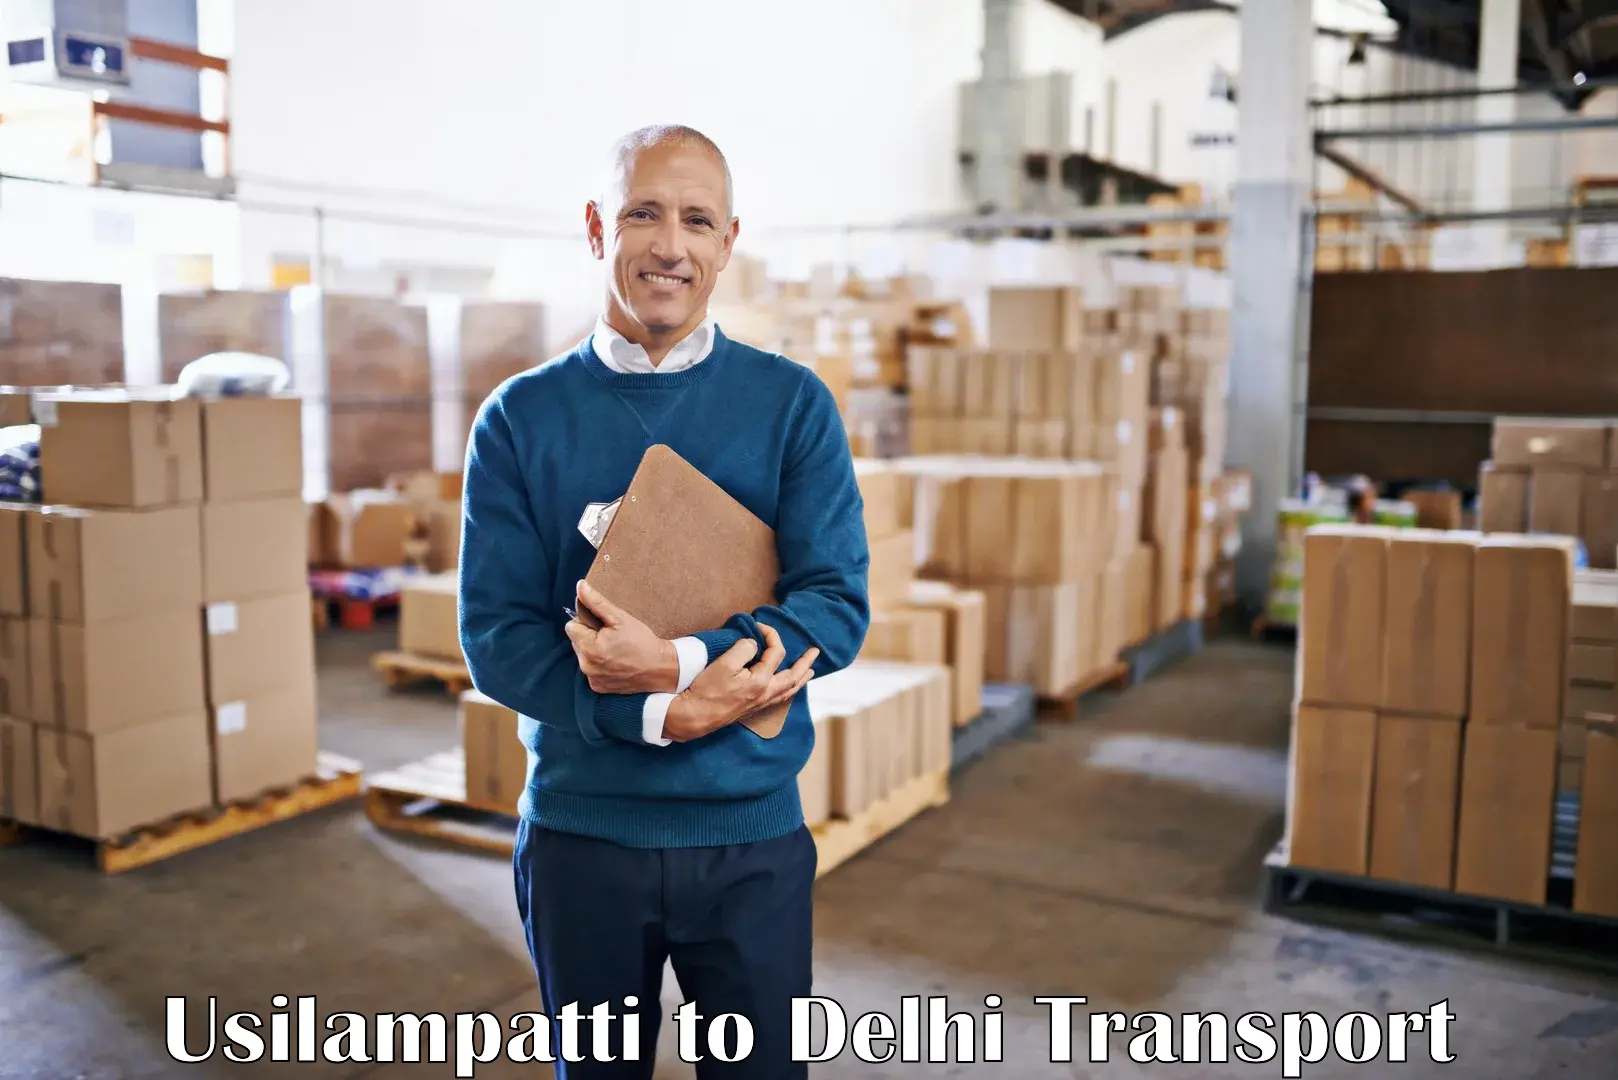 Cargo transport services Usilampatti to NIT Delhi